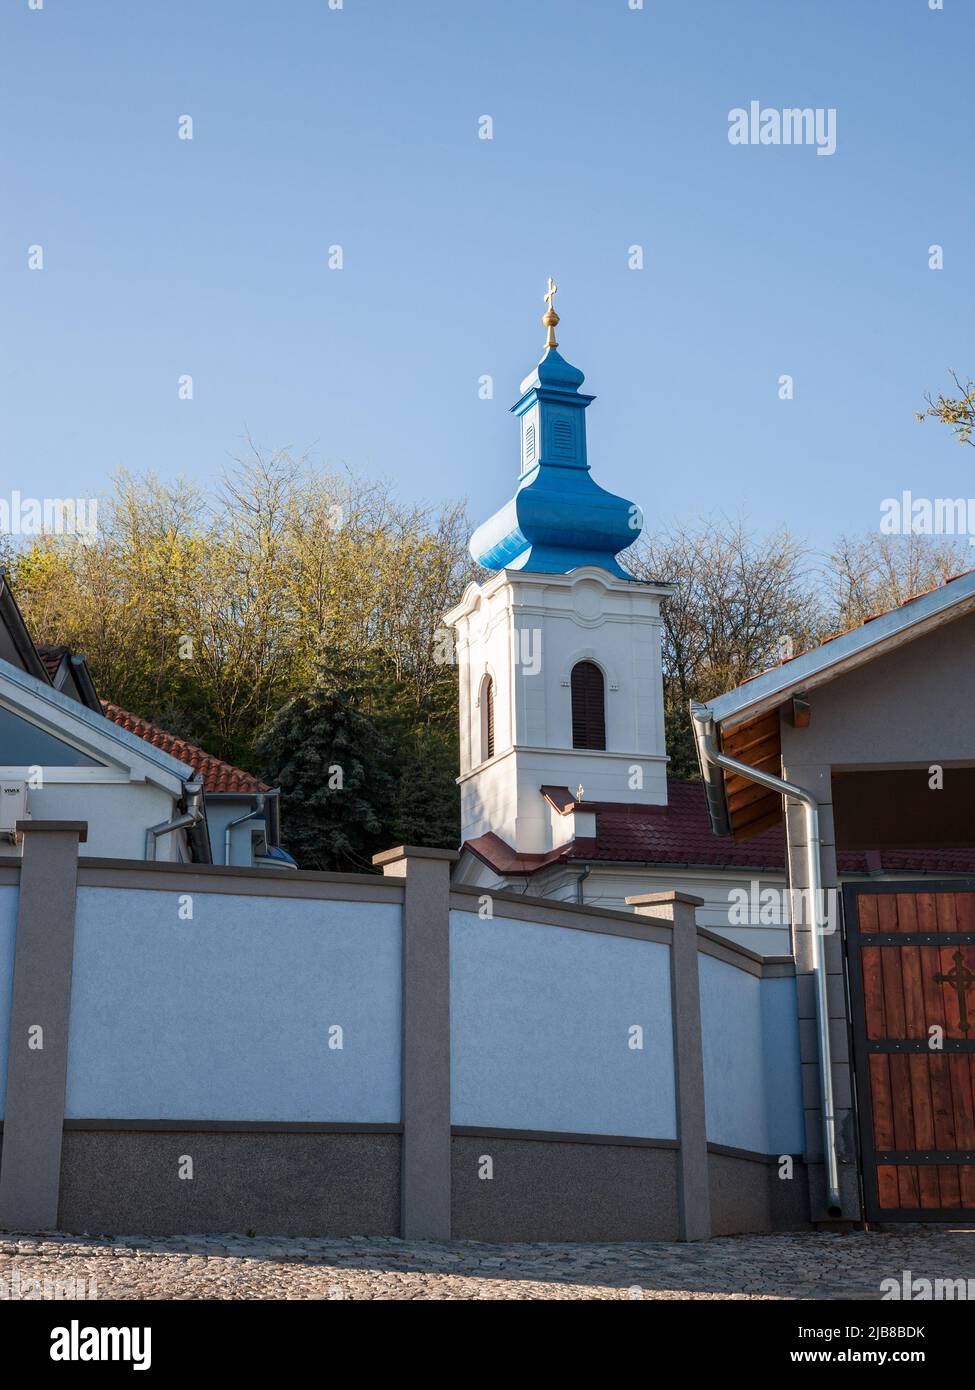 Die Hauptkirche des Klosters Sveta petka, oder manastir svete petke, das serbisch-orthodoxe Kloster der Fruska gora Berge und des Parks, der große Landmar Stockfoto